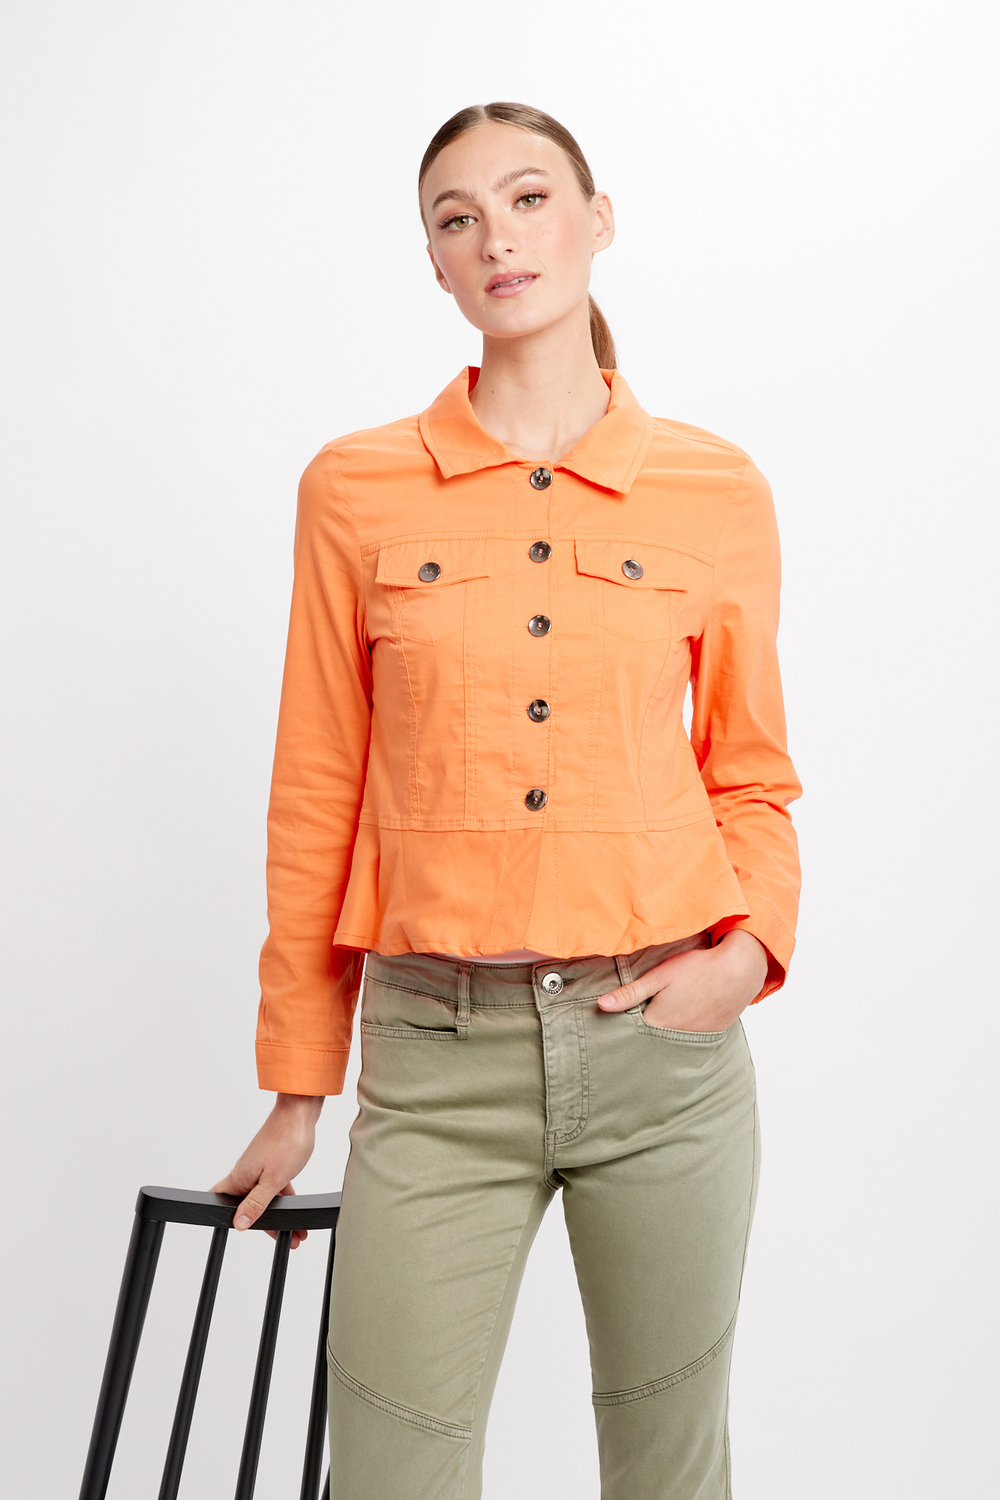 Woven Jacket Style 24223. Orange